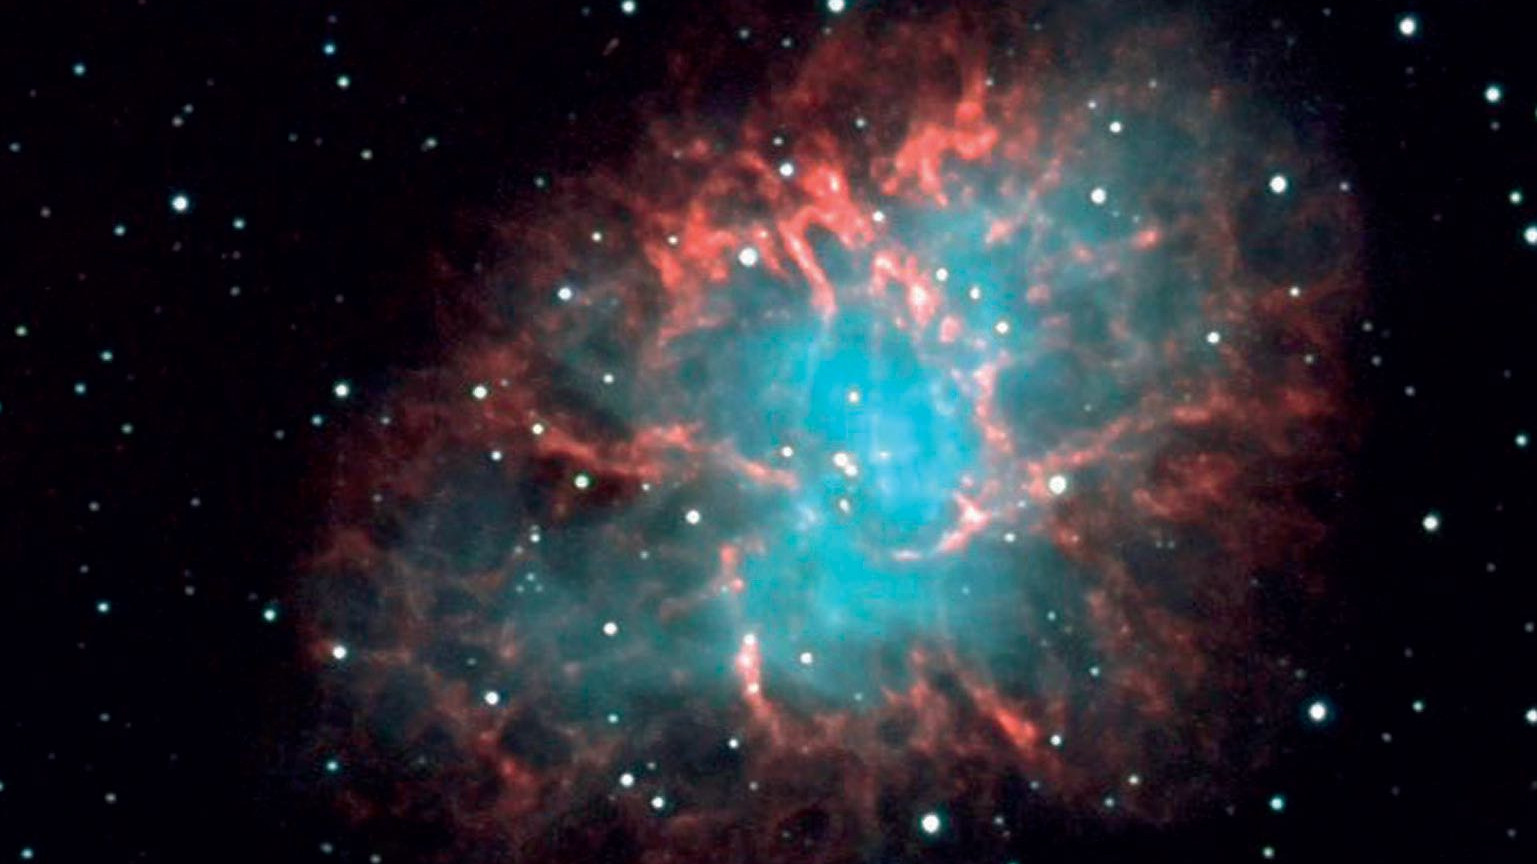 La nebulosa Granchio nella costellazione del Toro.
Michael Breite, Stefan Heutz, Wolfgang Ries / CCD Guide